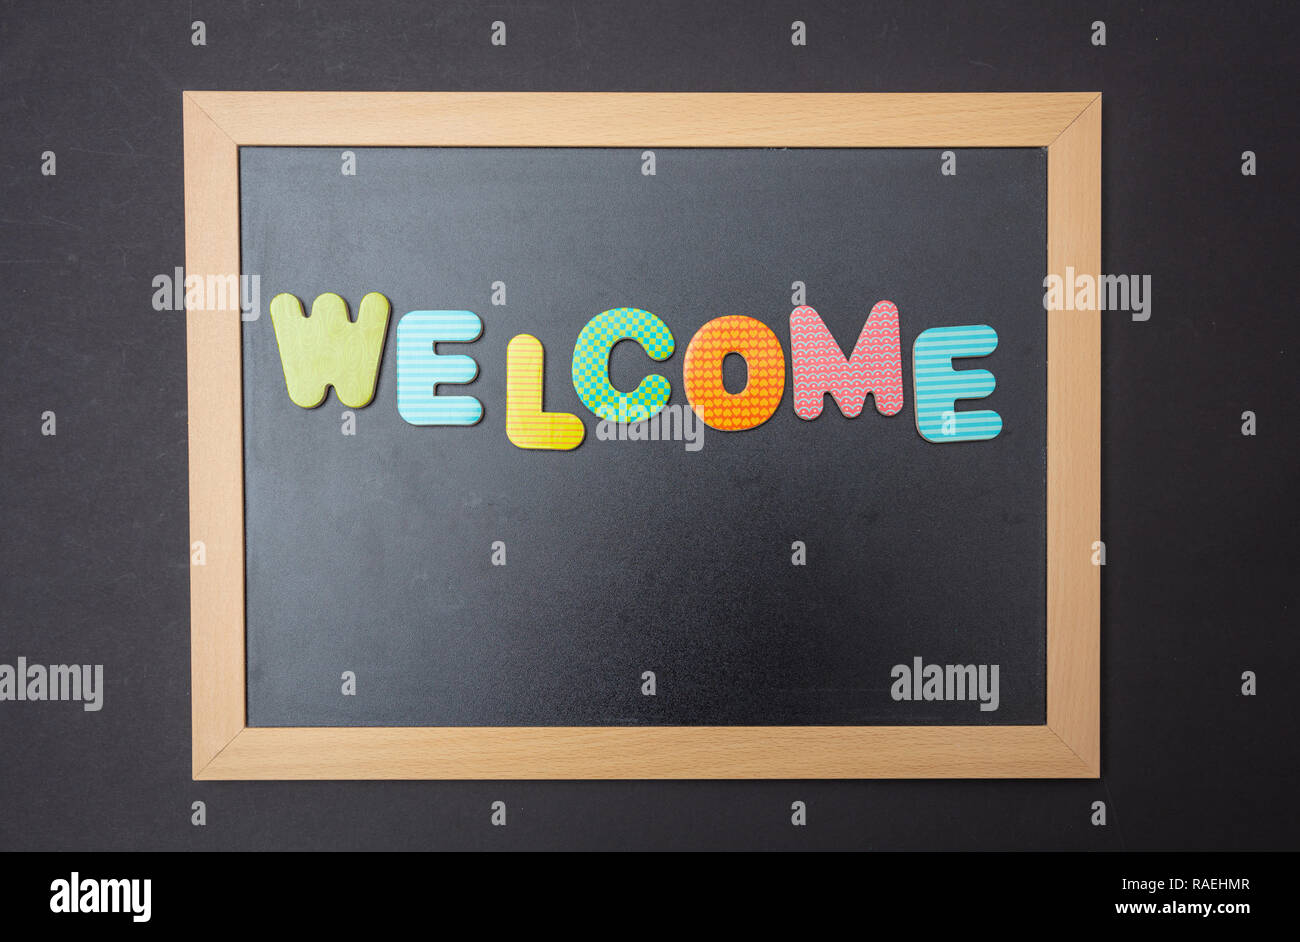 Willkommen. Vorstand mit schwarzem Rahmen, Text Willkommen in bunten Buchstaben, schwarze Wand Hintergrund Stockfoto